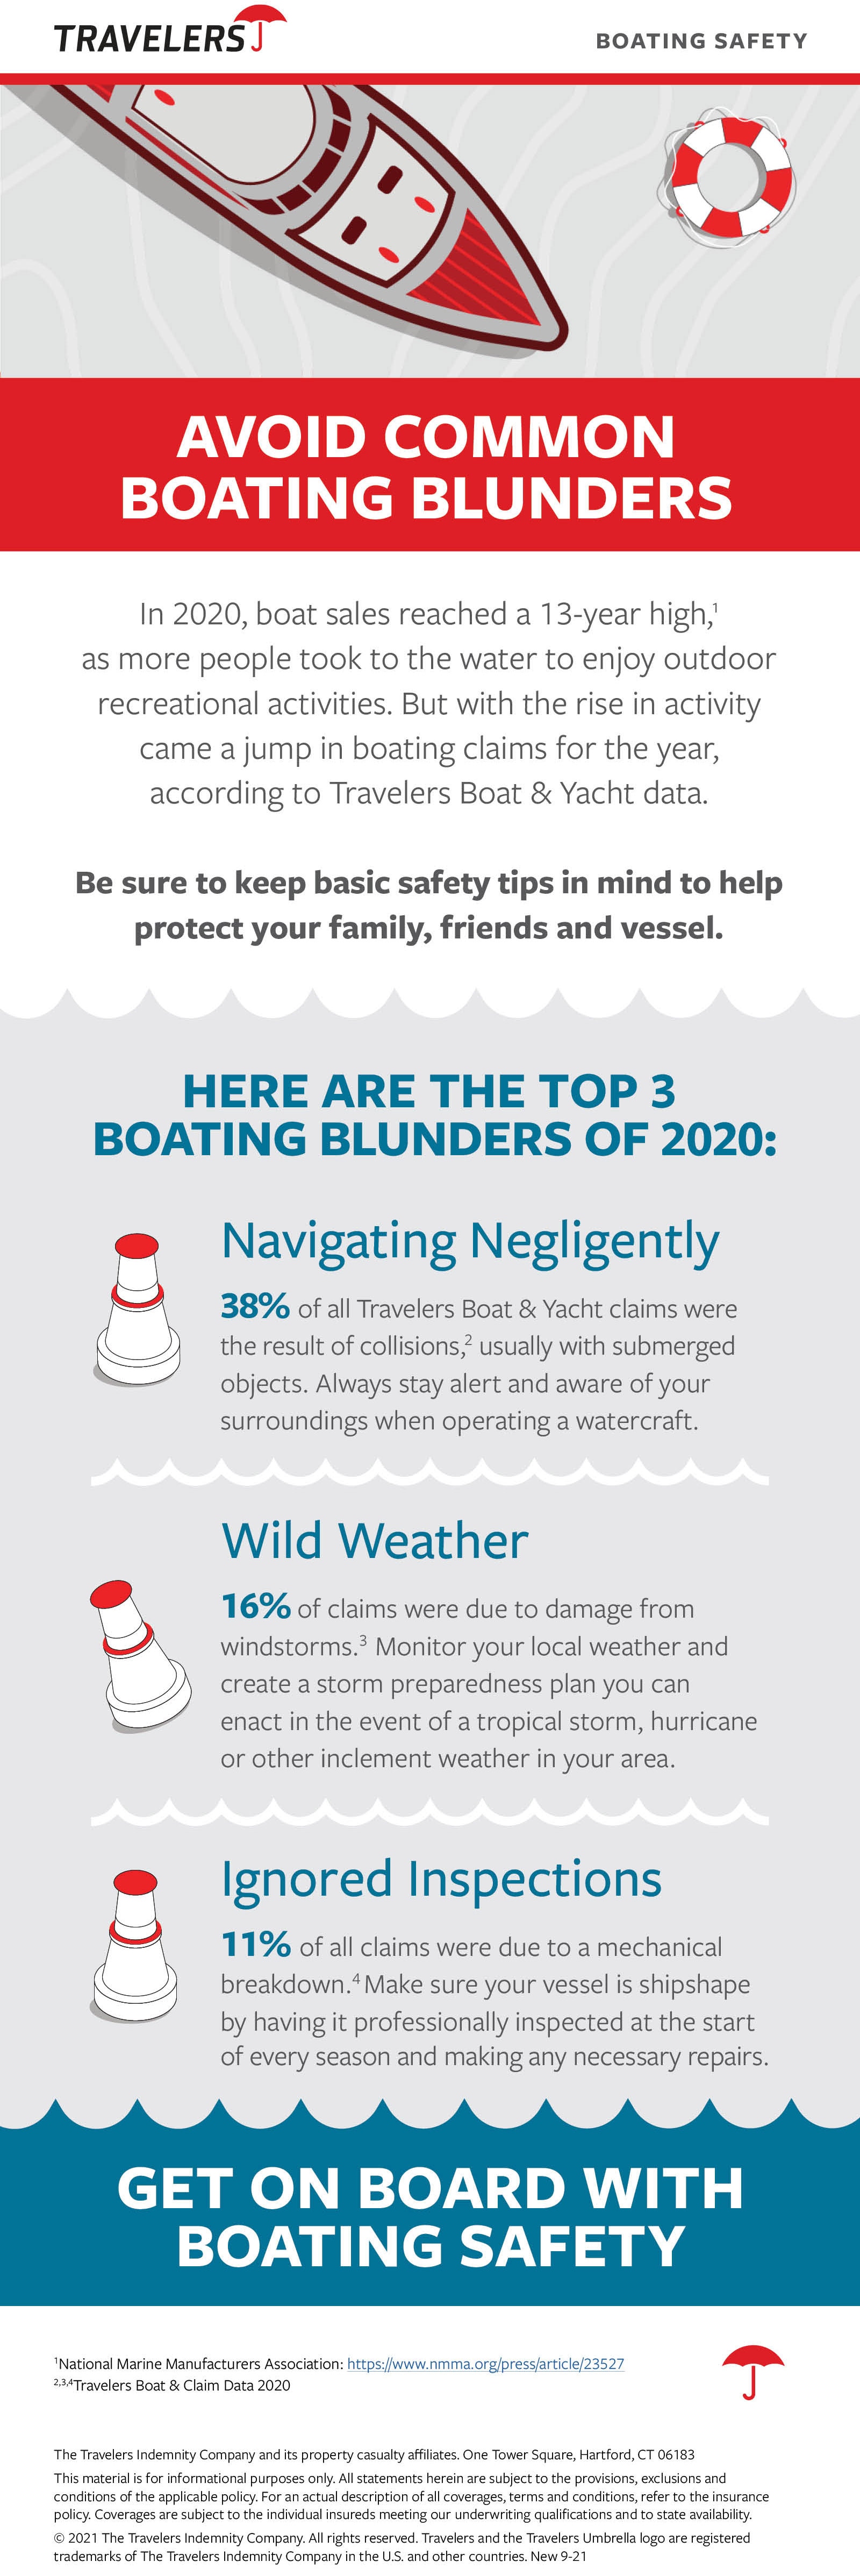 Avoid Common Boating Blunders, see details below.